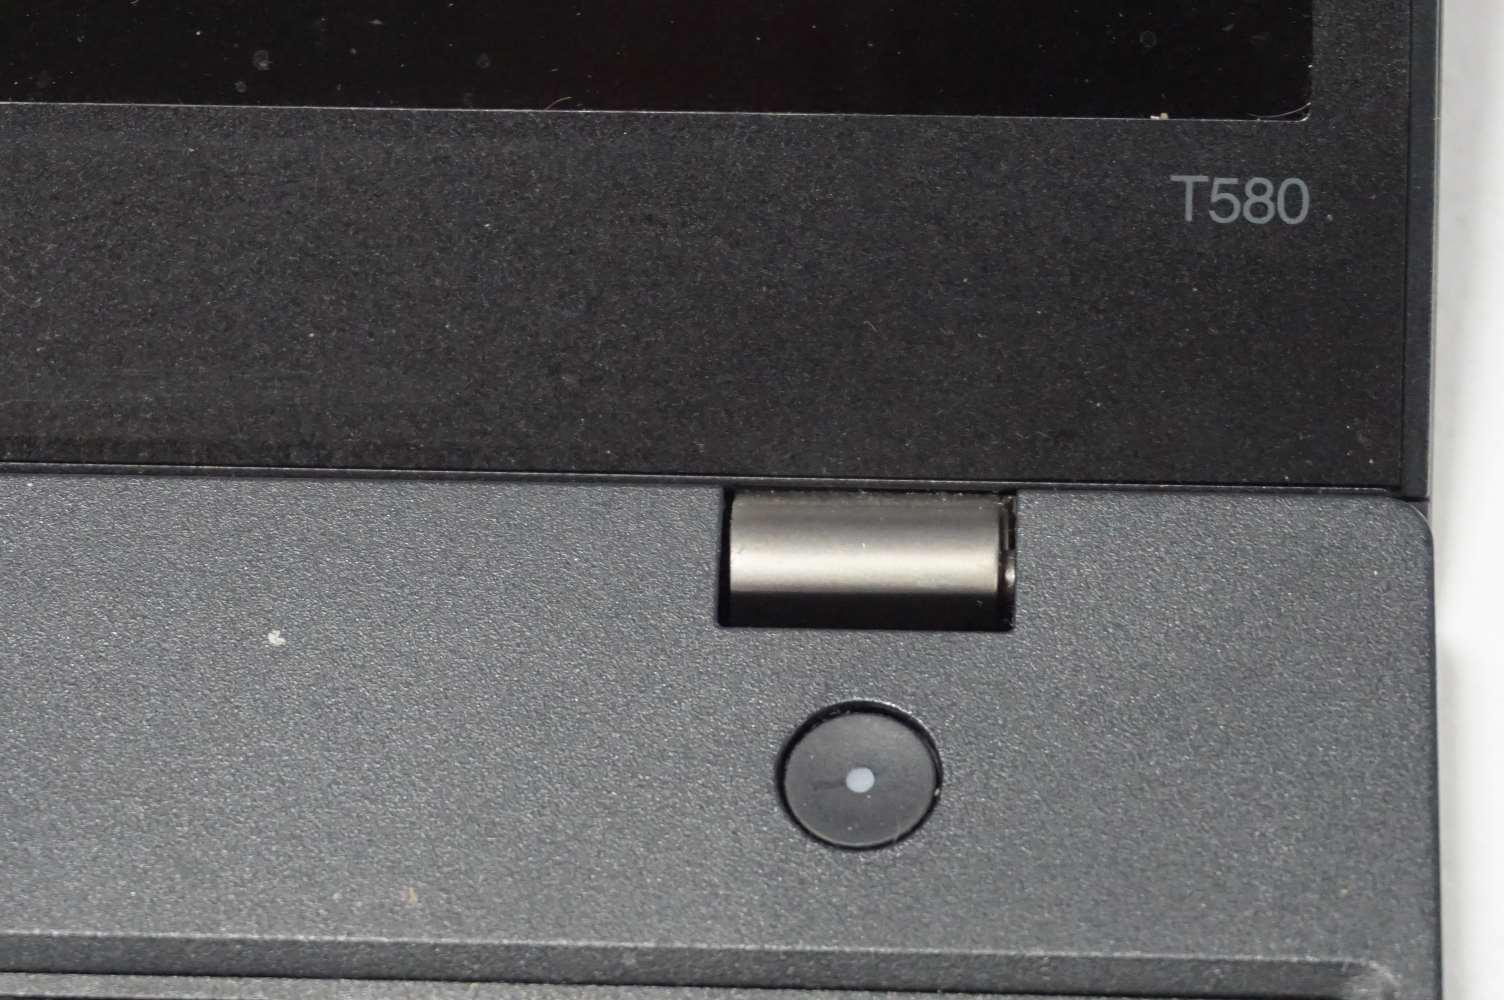 Lenovo ThinkPad T580 8th Gen Intel i5 Laptop (Ser#R9DTFGK4)